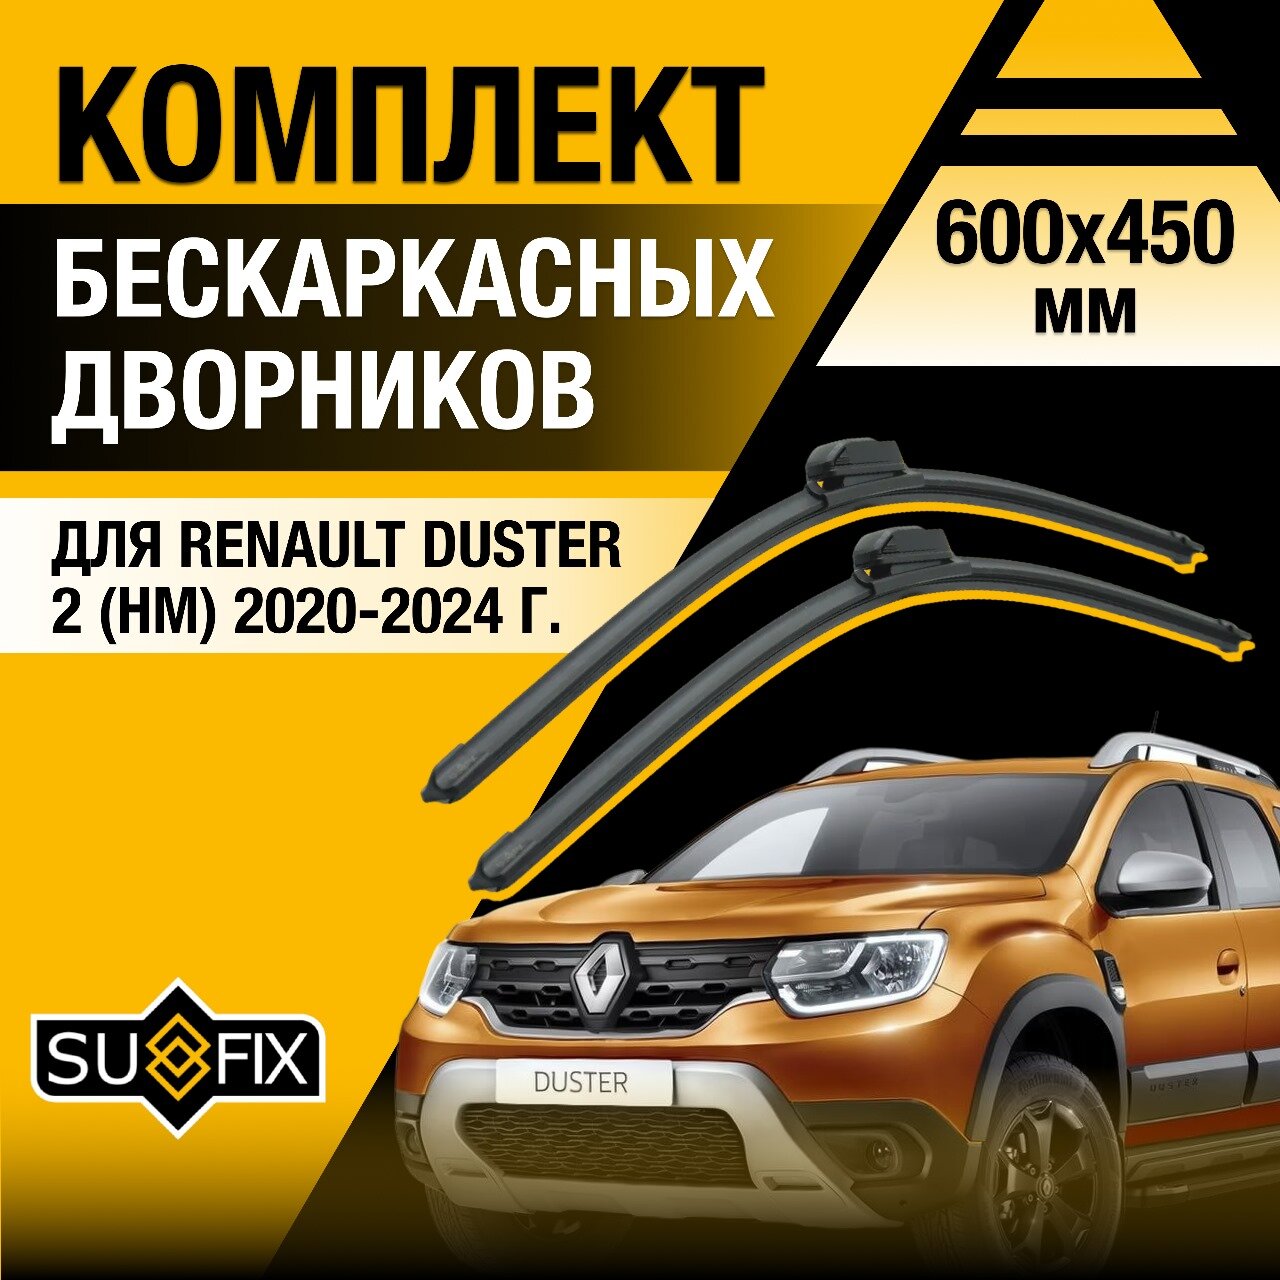 Дворники автомобильные для Renault Duster (2) HM / 2020 2021 2022 2023 2024 / Бескаркасные щетки стеклоочистителя комплект 600 450 мм Рено Дастер